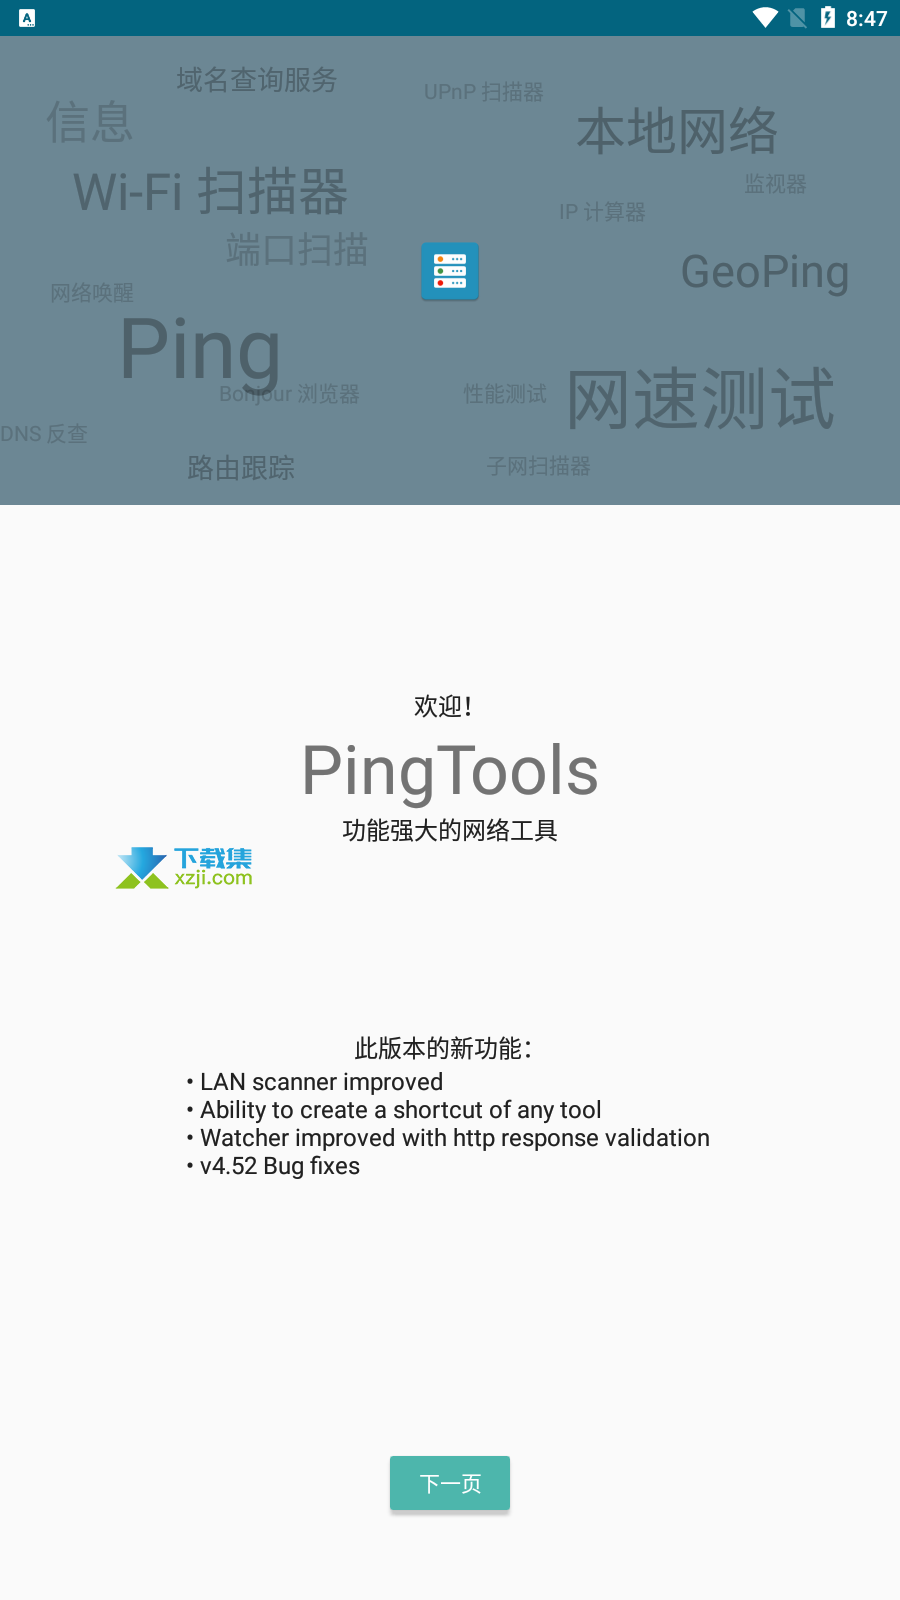 PingTools Pro界面